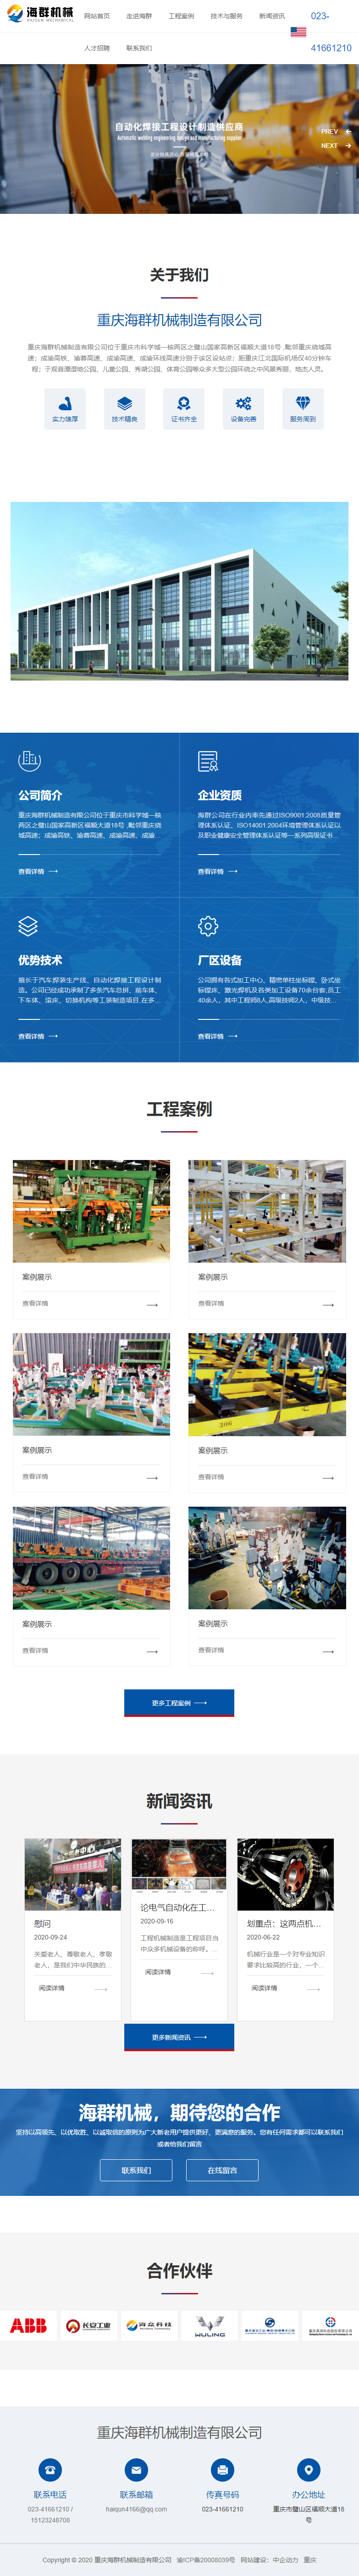 重庆海群机械制造有限公司网站案例